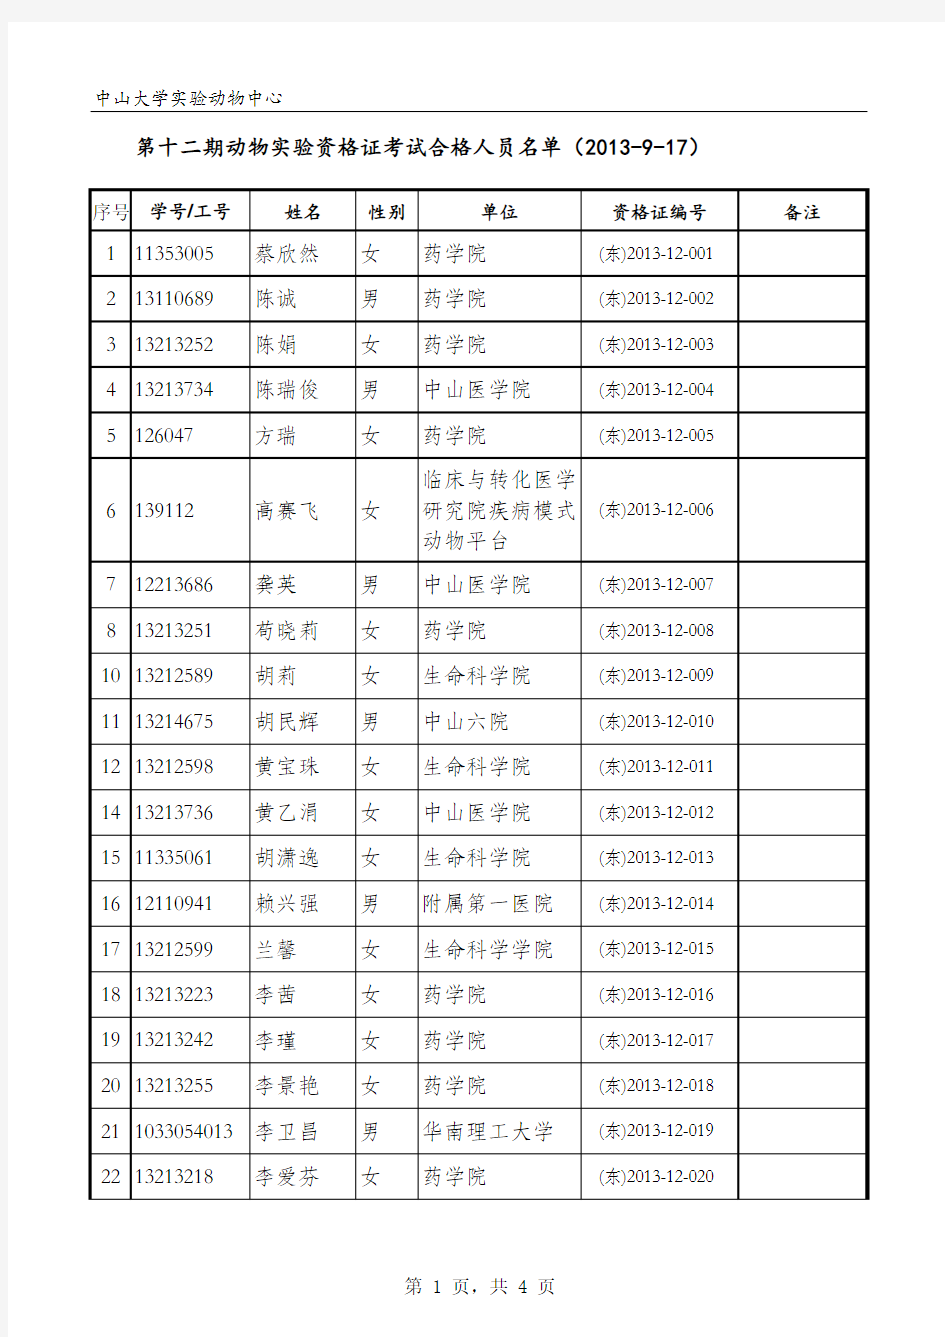 中山大学实验动物中心 学号 (东)2013-12-001 (东)2013-12 …